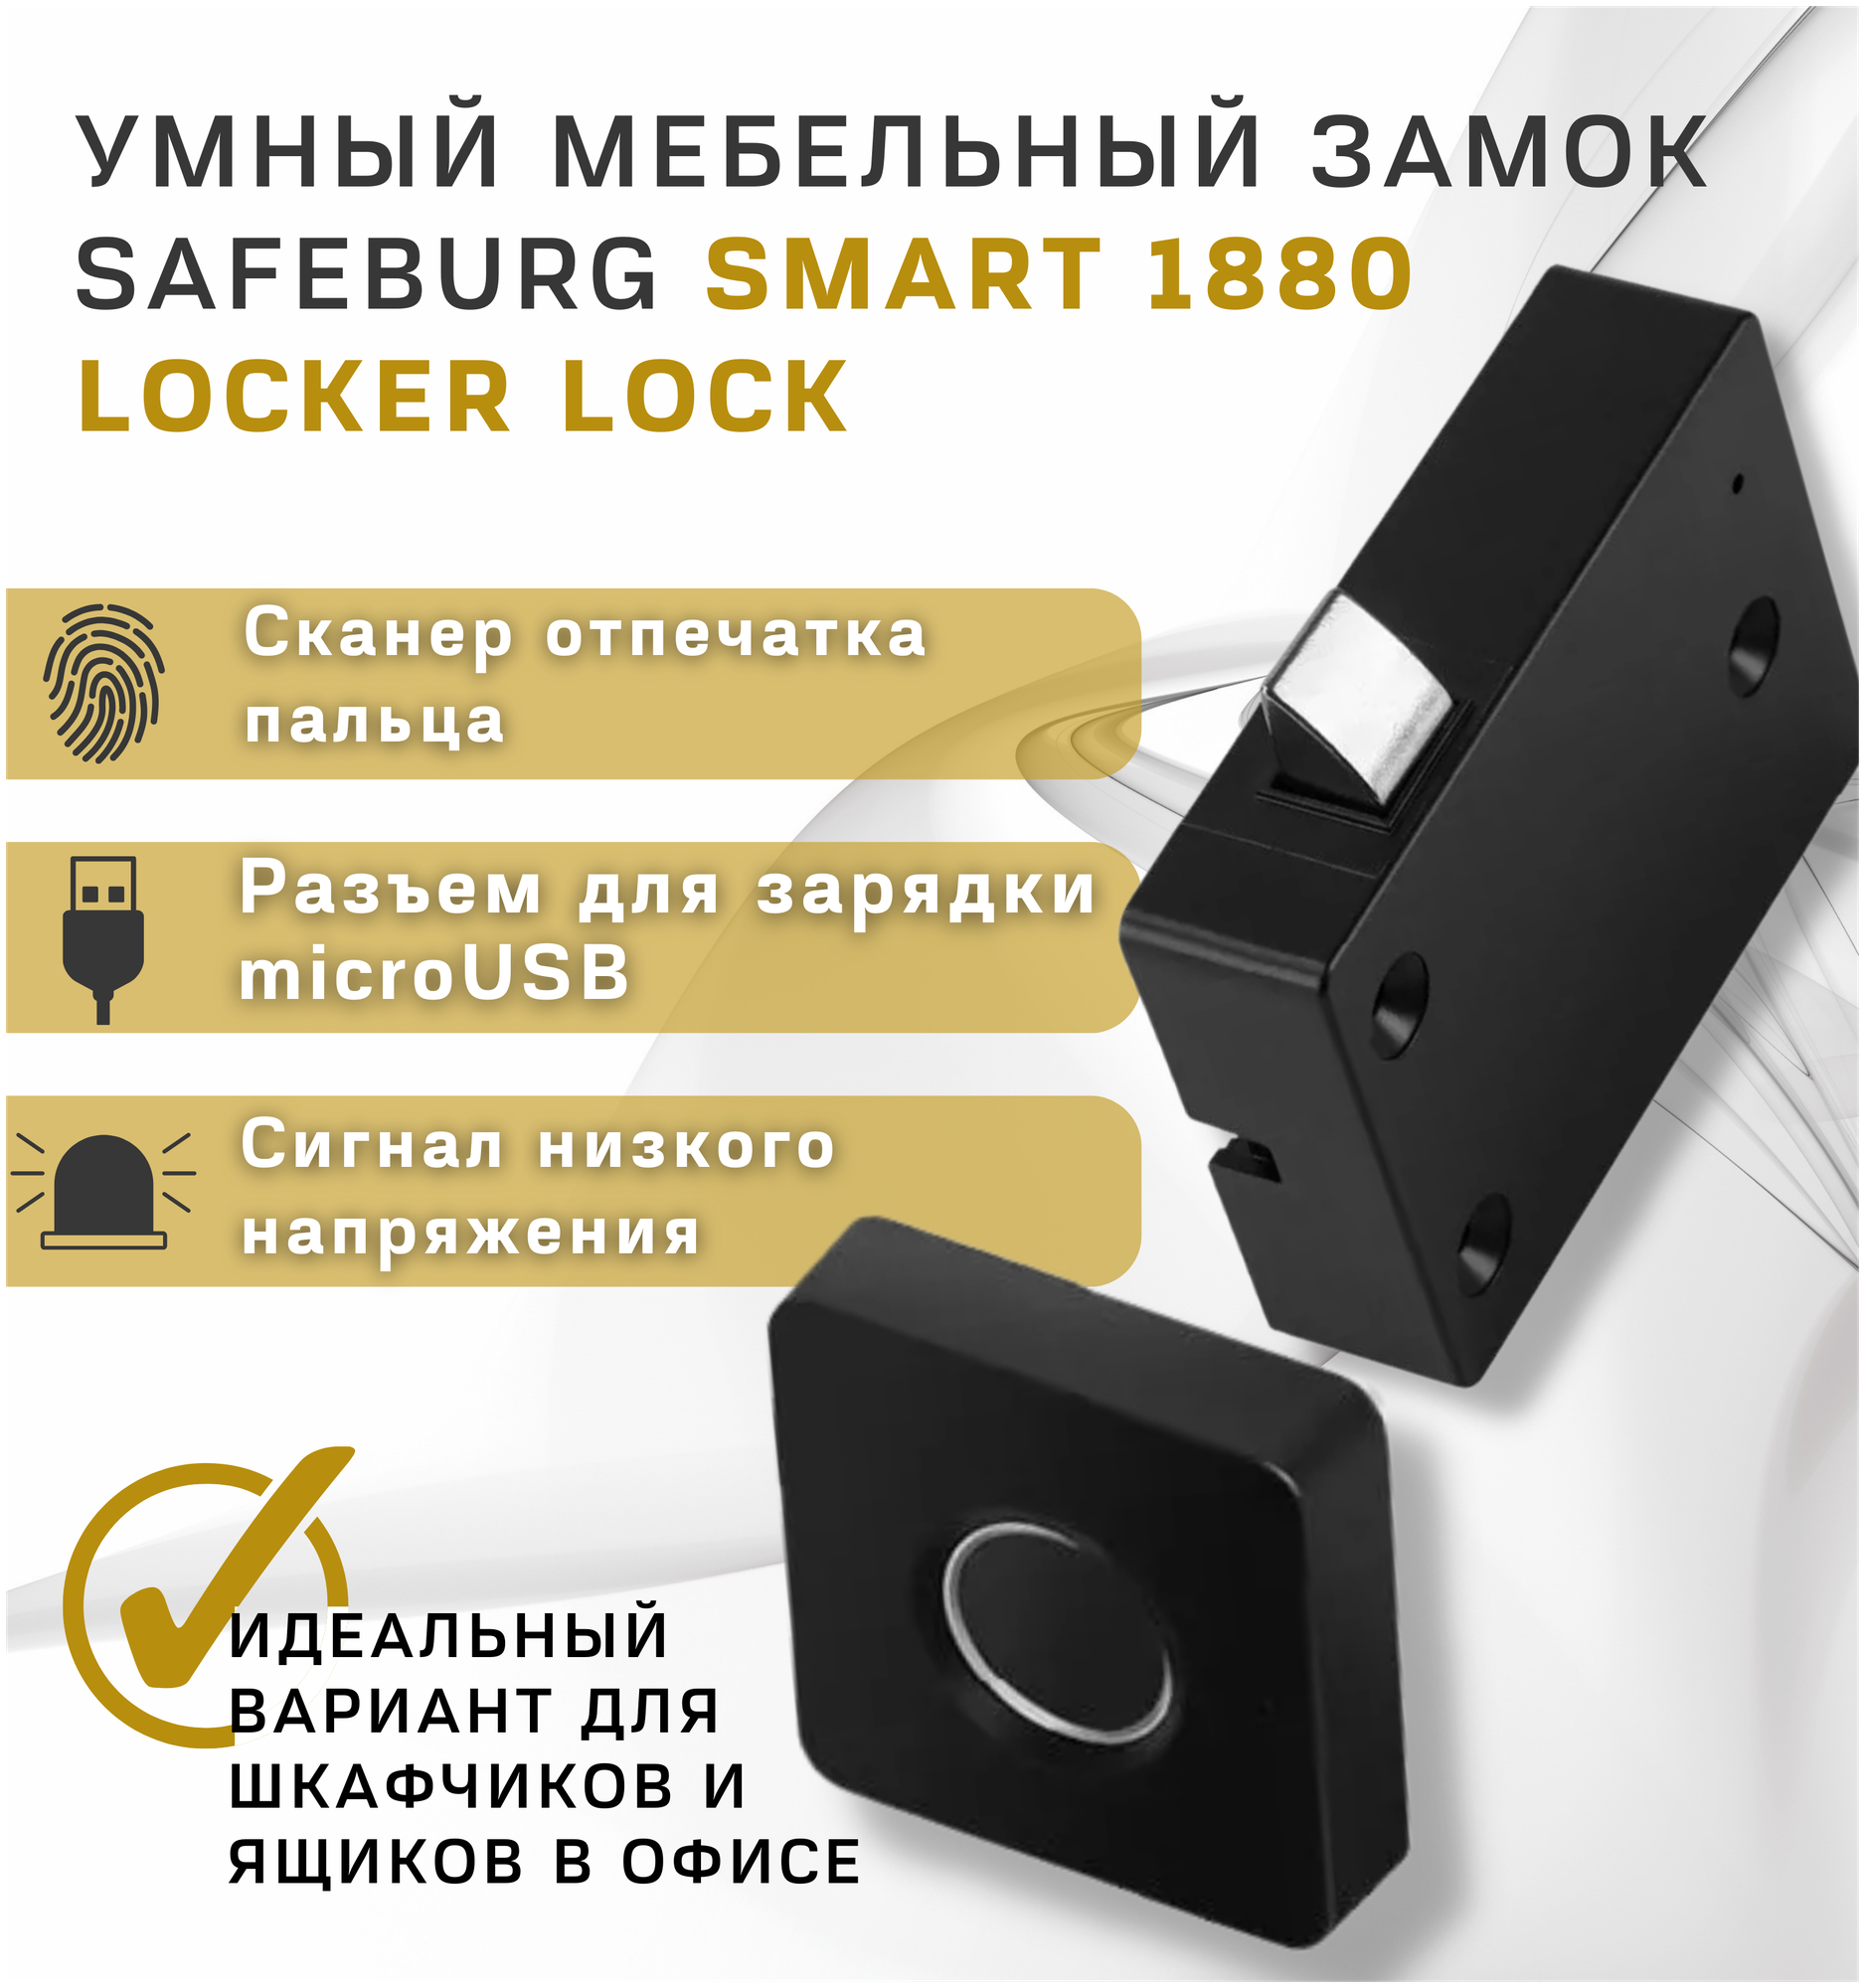 Замок электронный биометрический SAFEBURG SMART 1880 Locker Lock, мебельный/встраиваемый